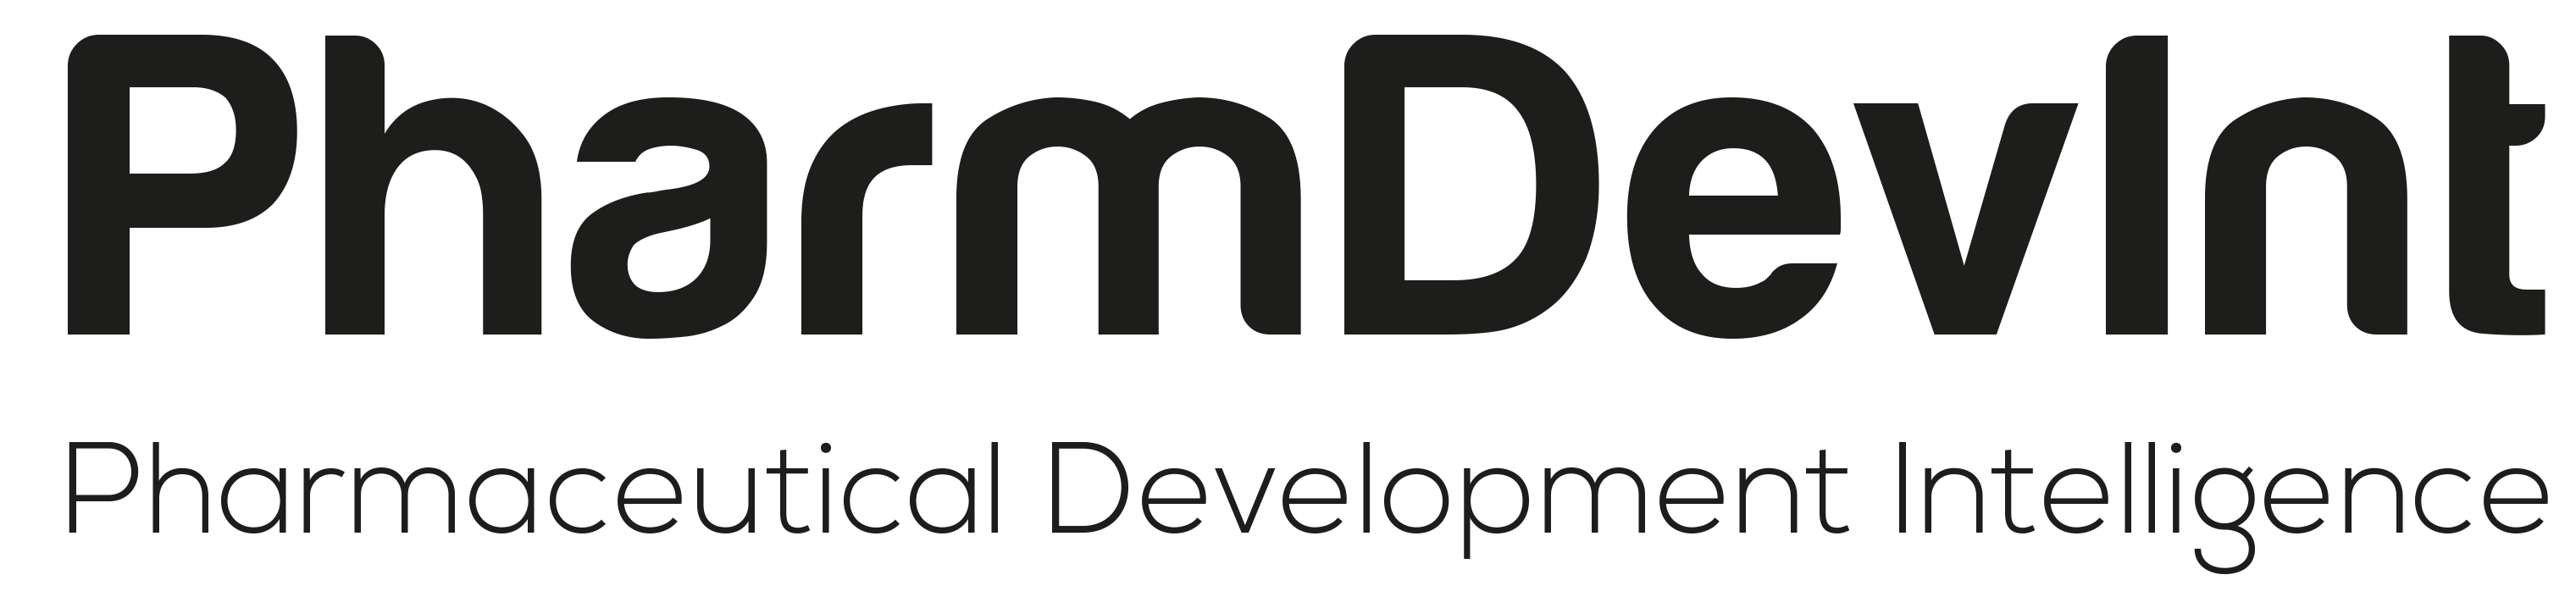 Pharma & Medical PharmDevInt GmbH Logo